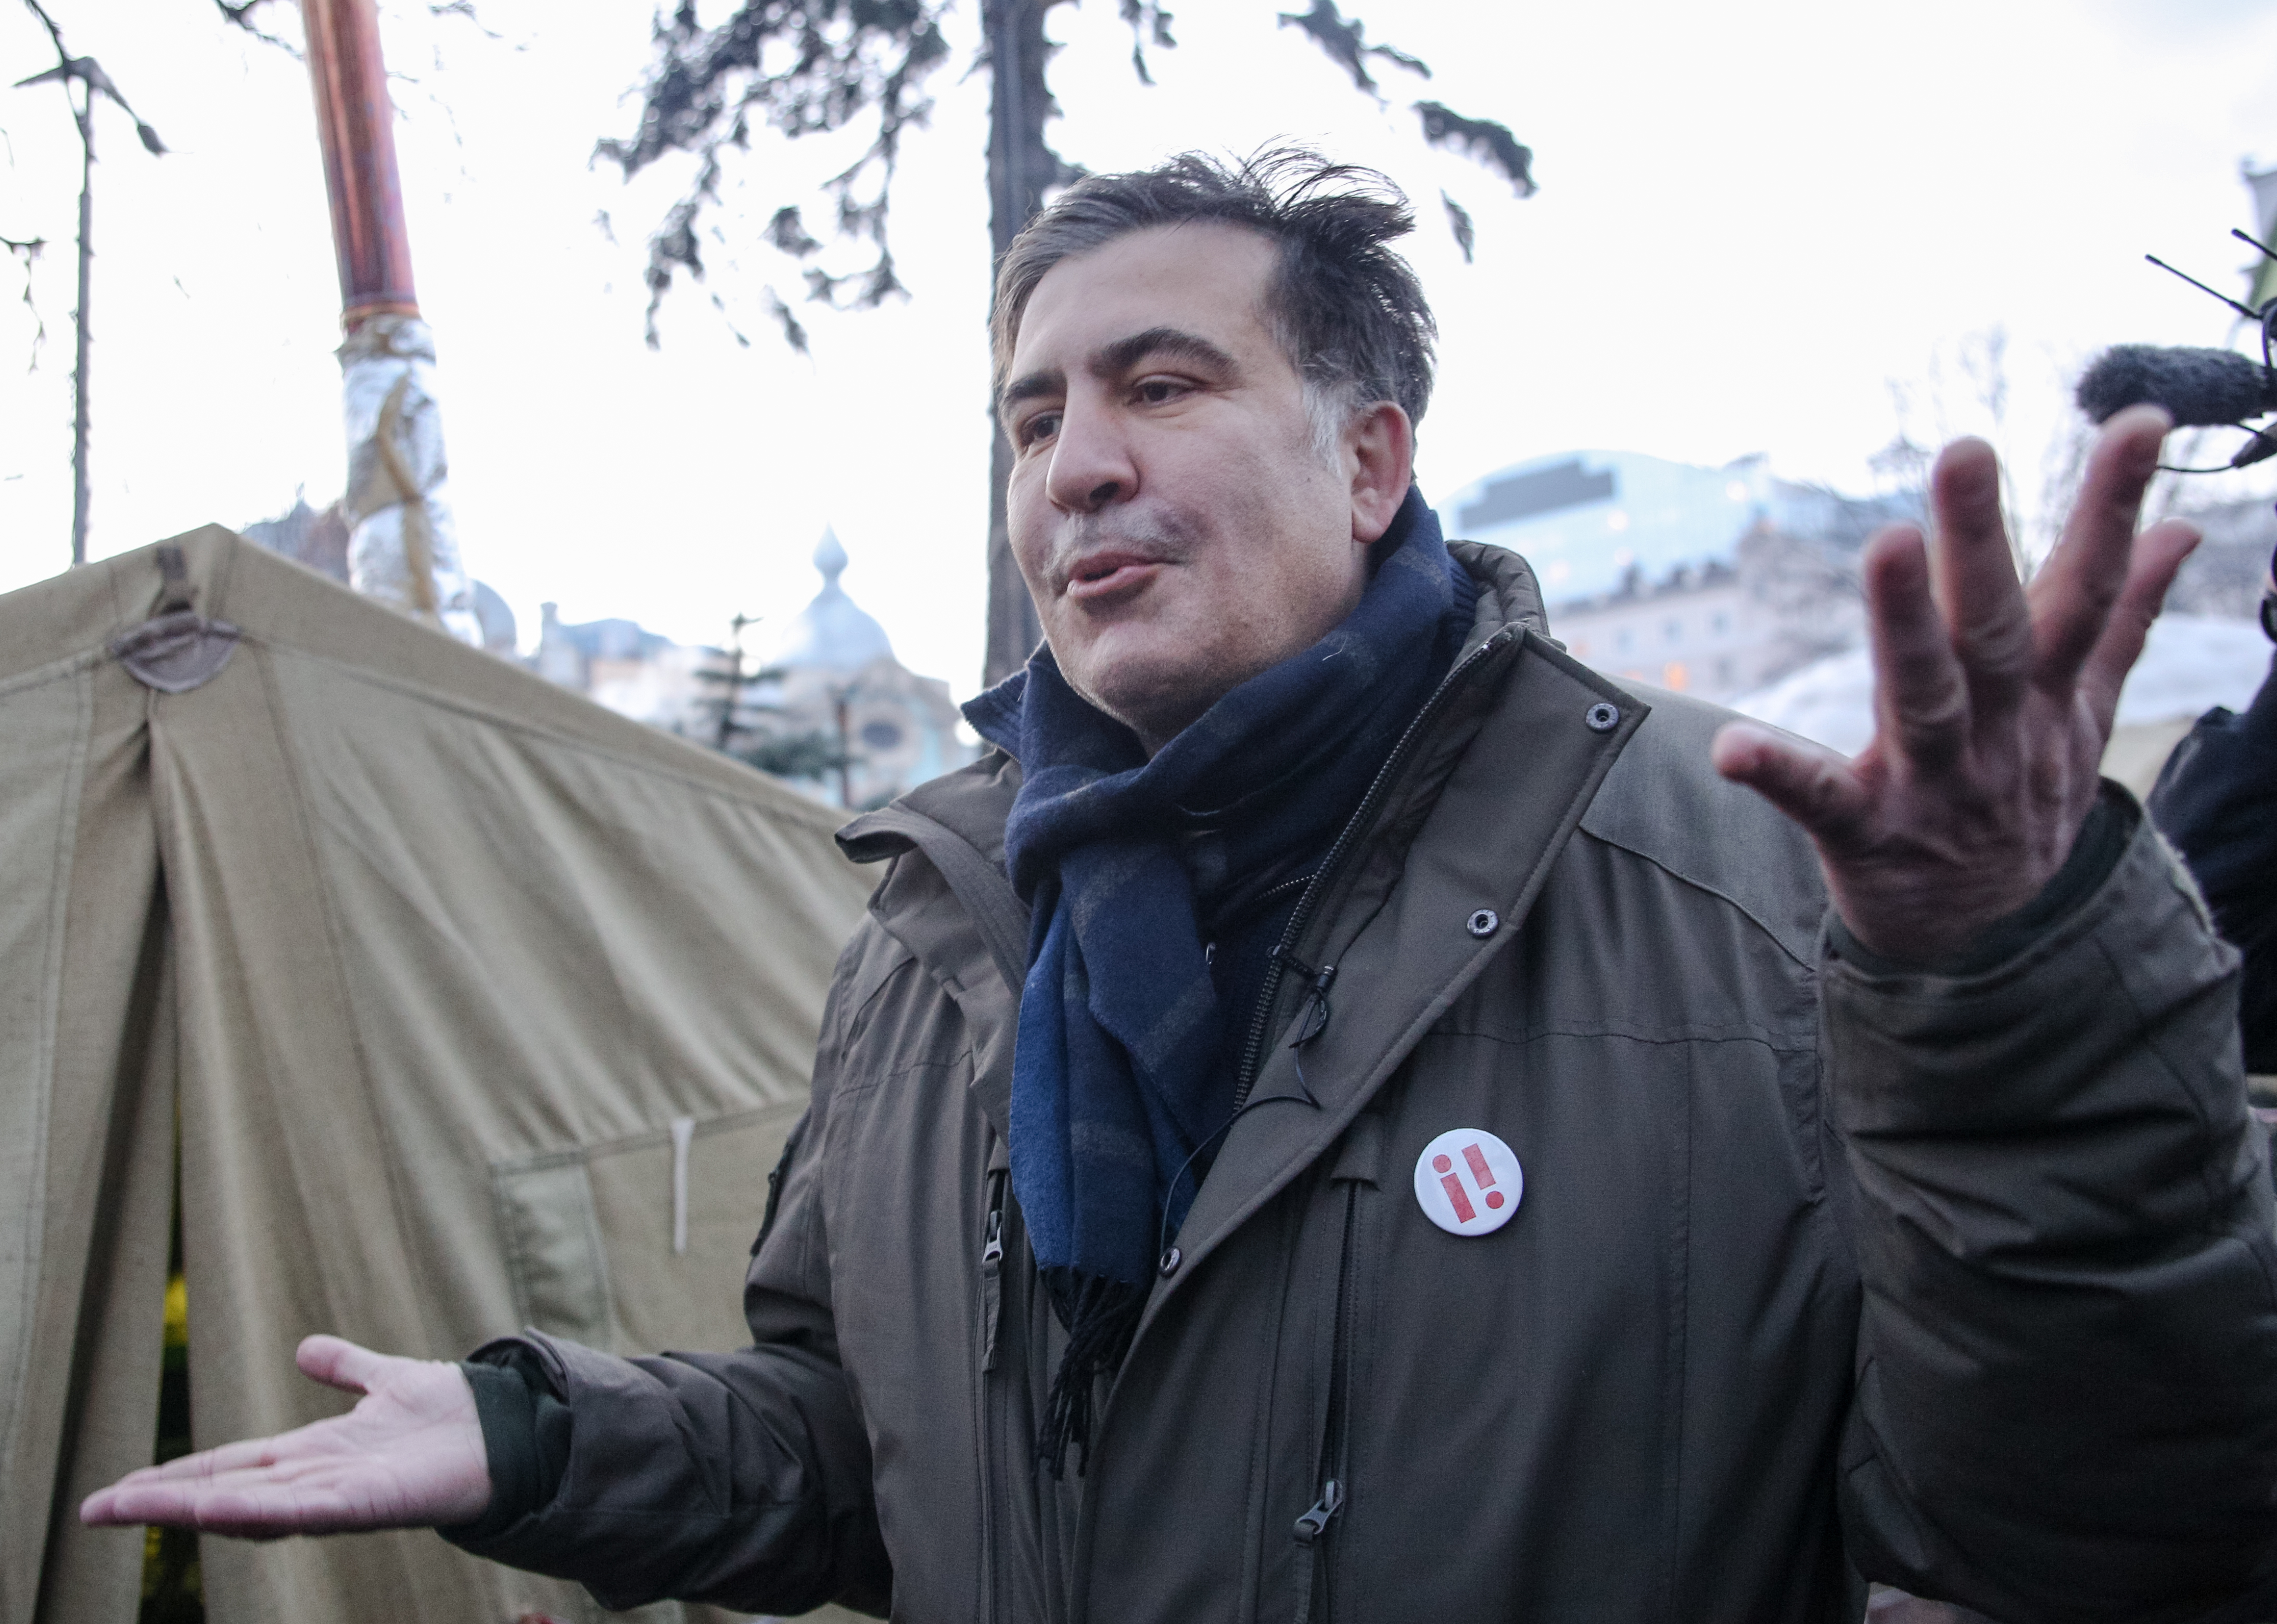 Szaakasvilit őrizetbe vették Kijevben